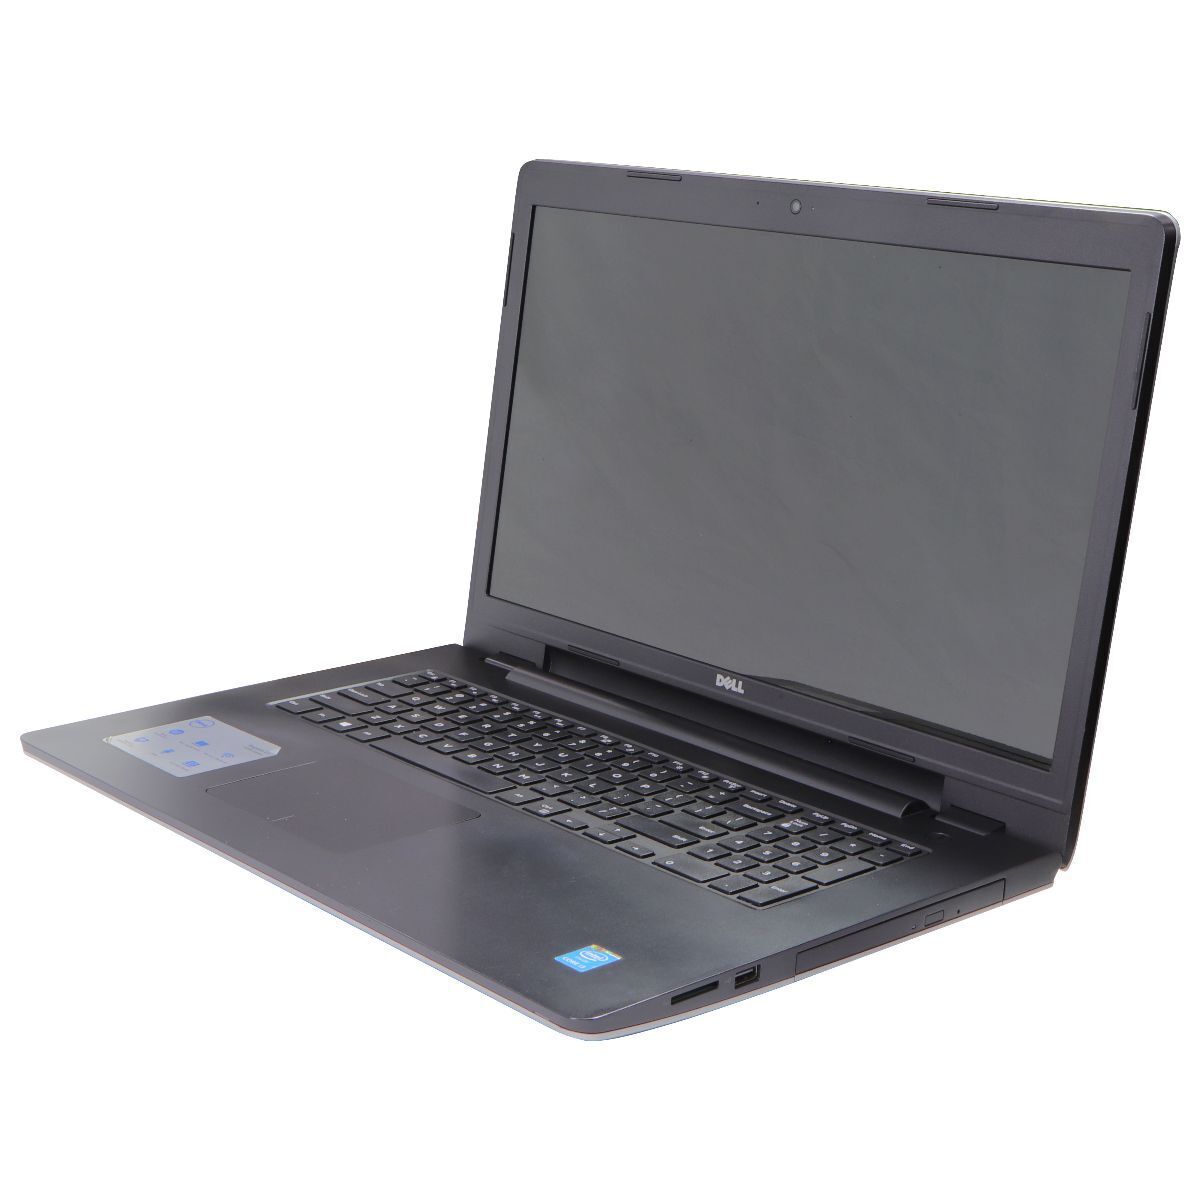 Dell Inspiron 17 5748 (17.3-inch) Laptop (P26E) i3-4030U/500GB HDD/8GB/10 Home